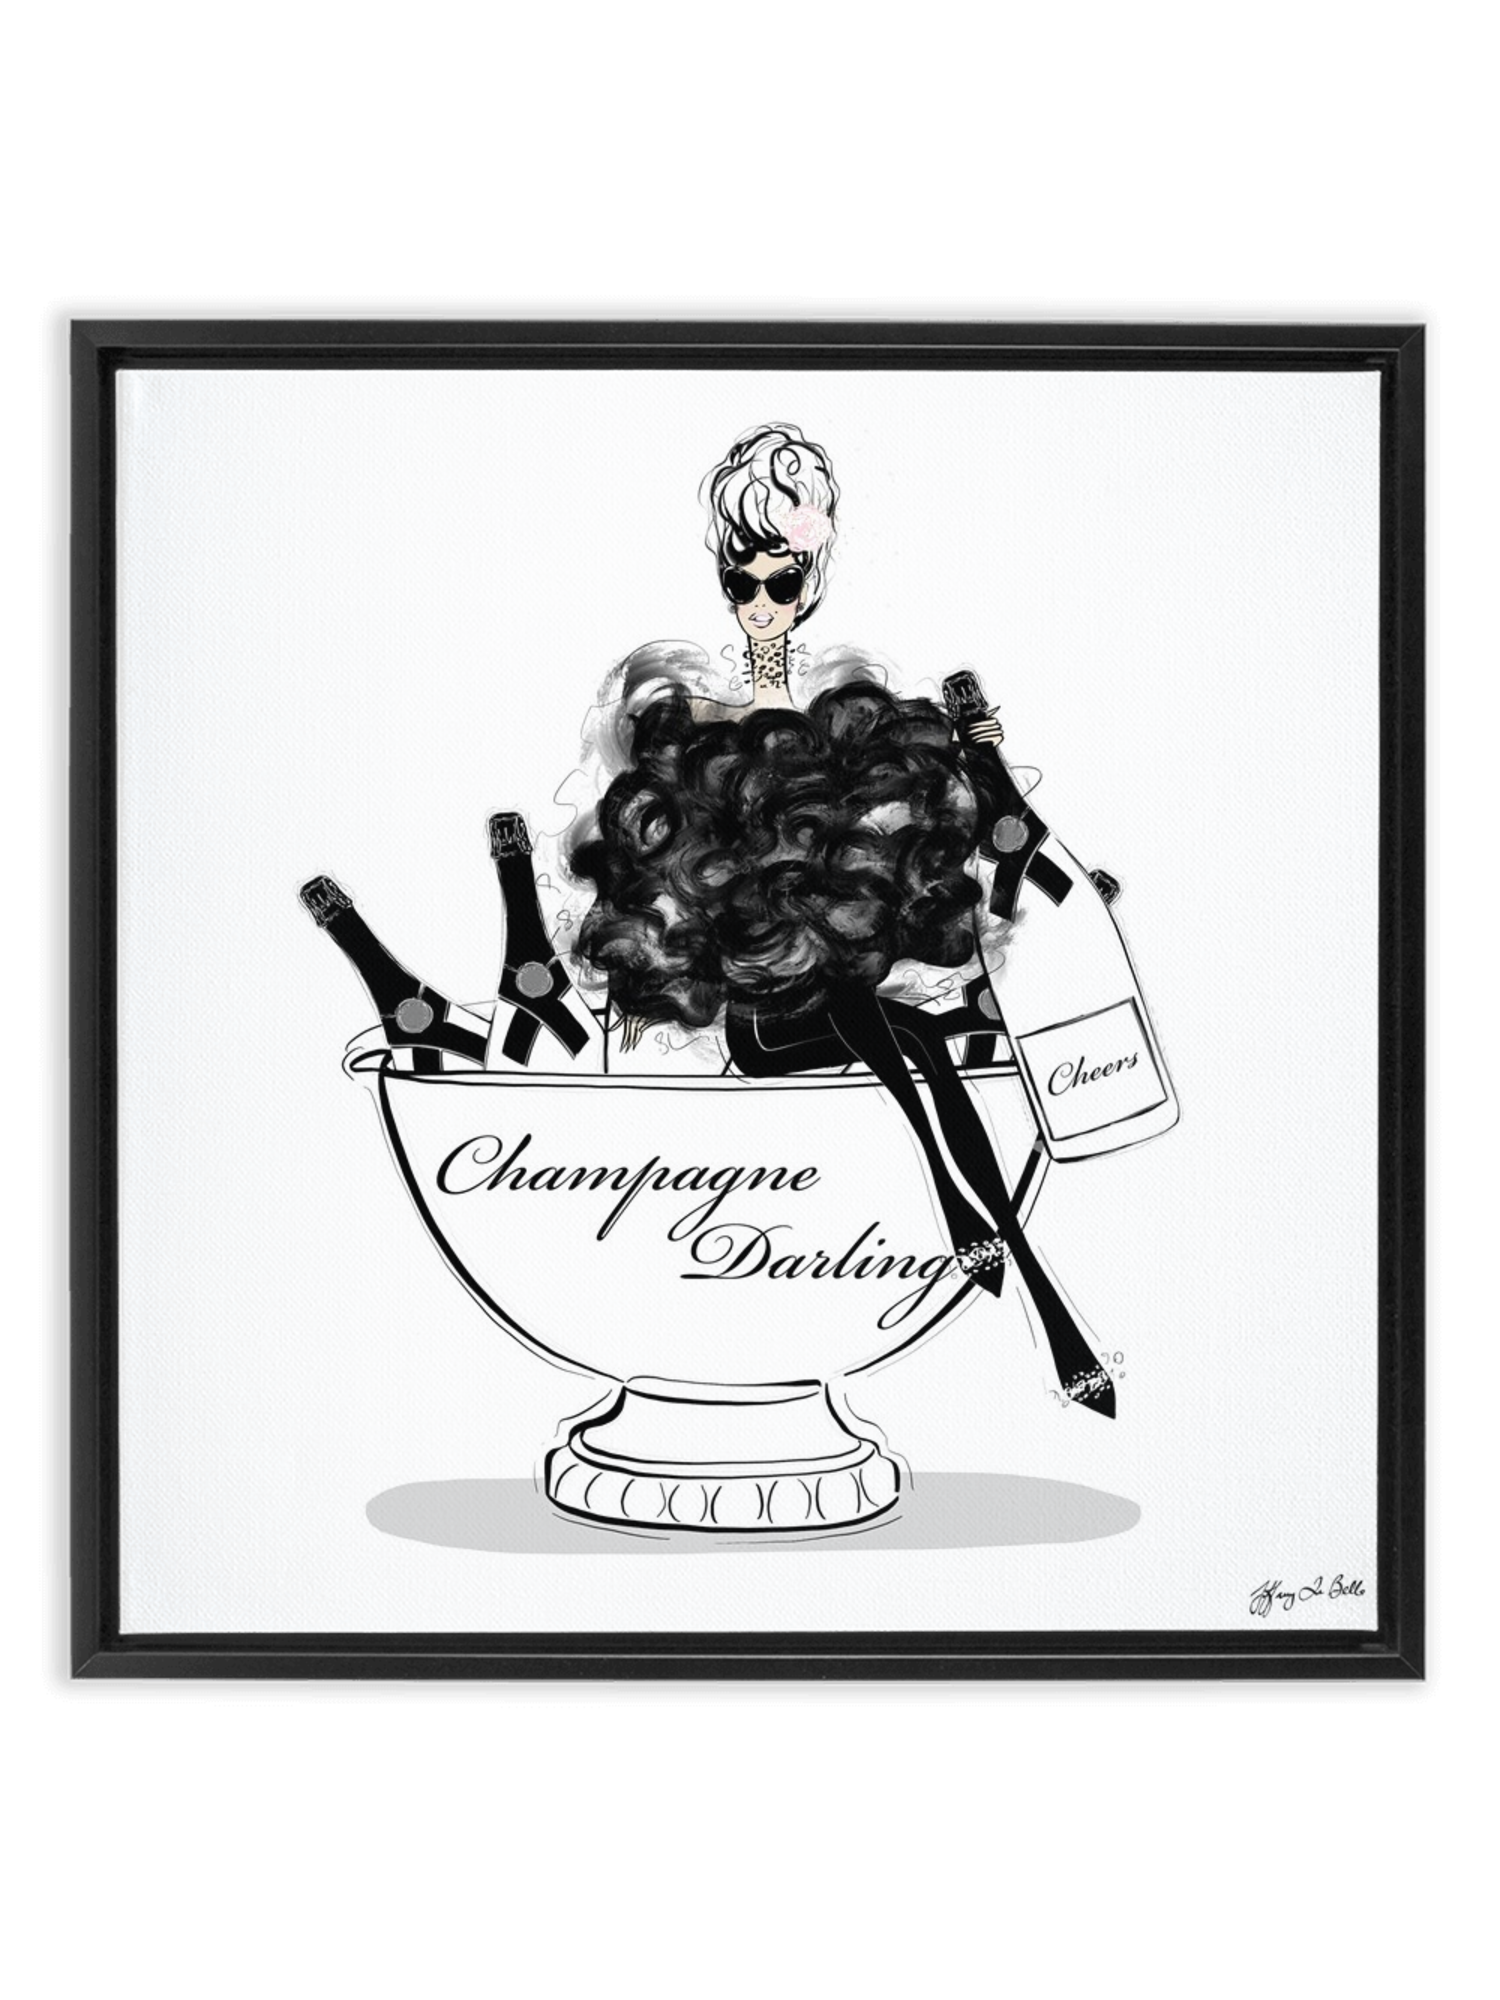 Champagne Darling - Illustration - Canvas Gallery Print - Unframed or Framed - Tiffany La Belle